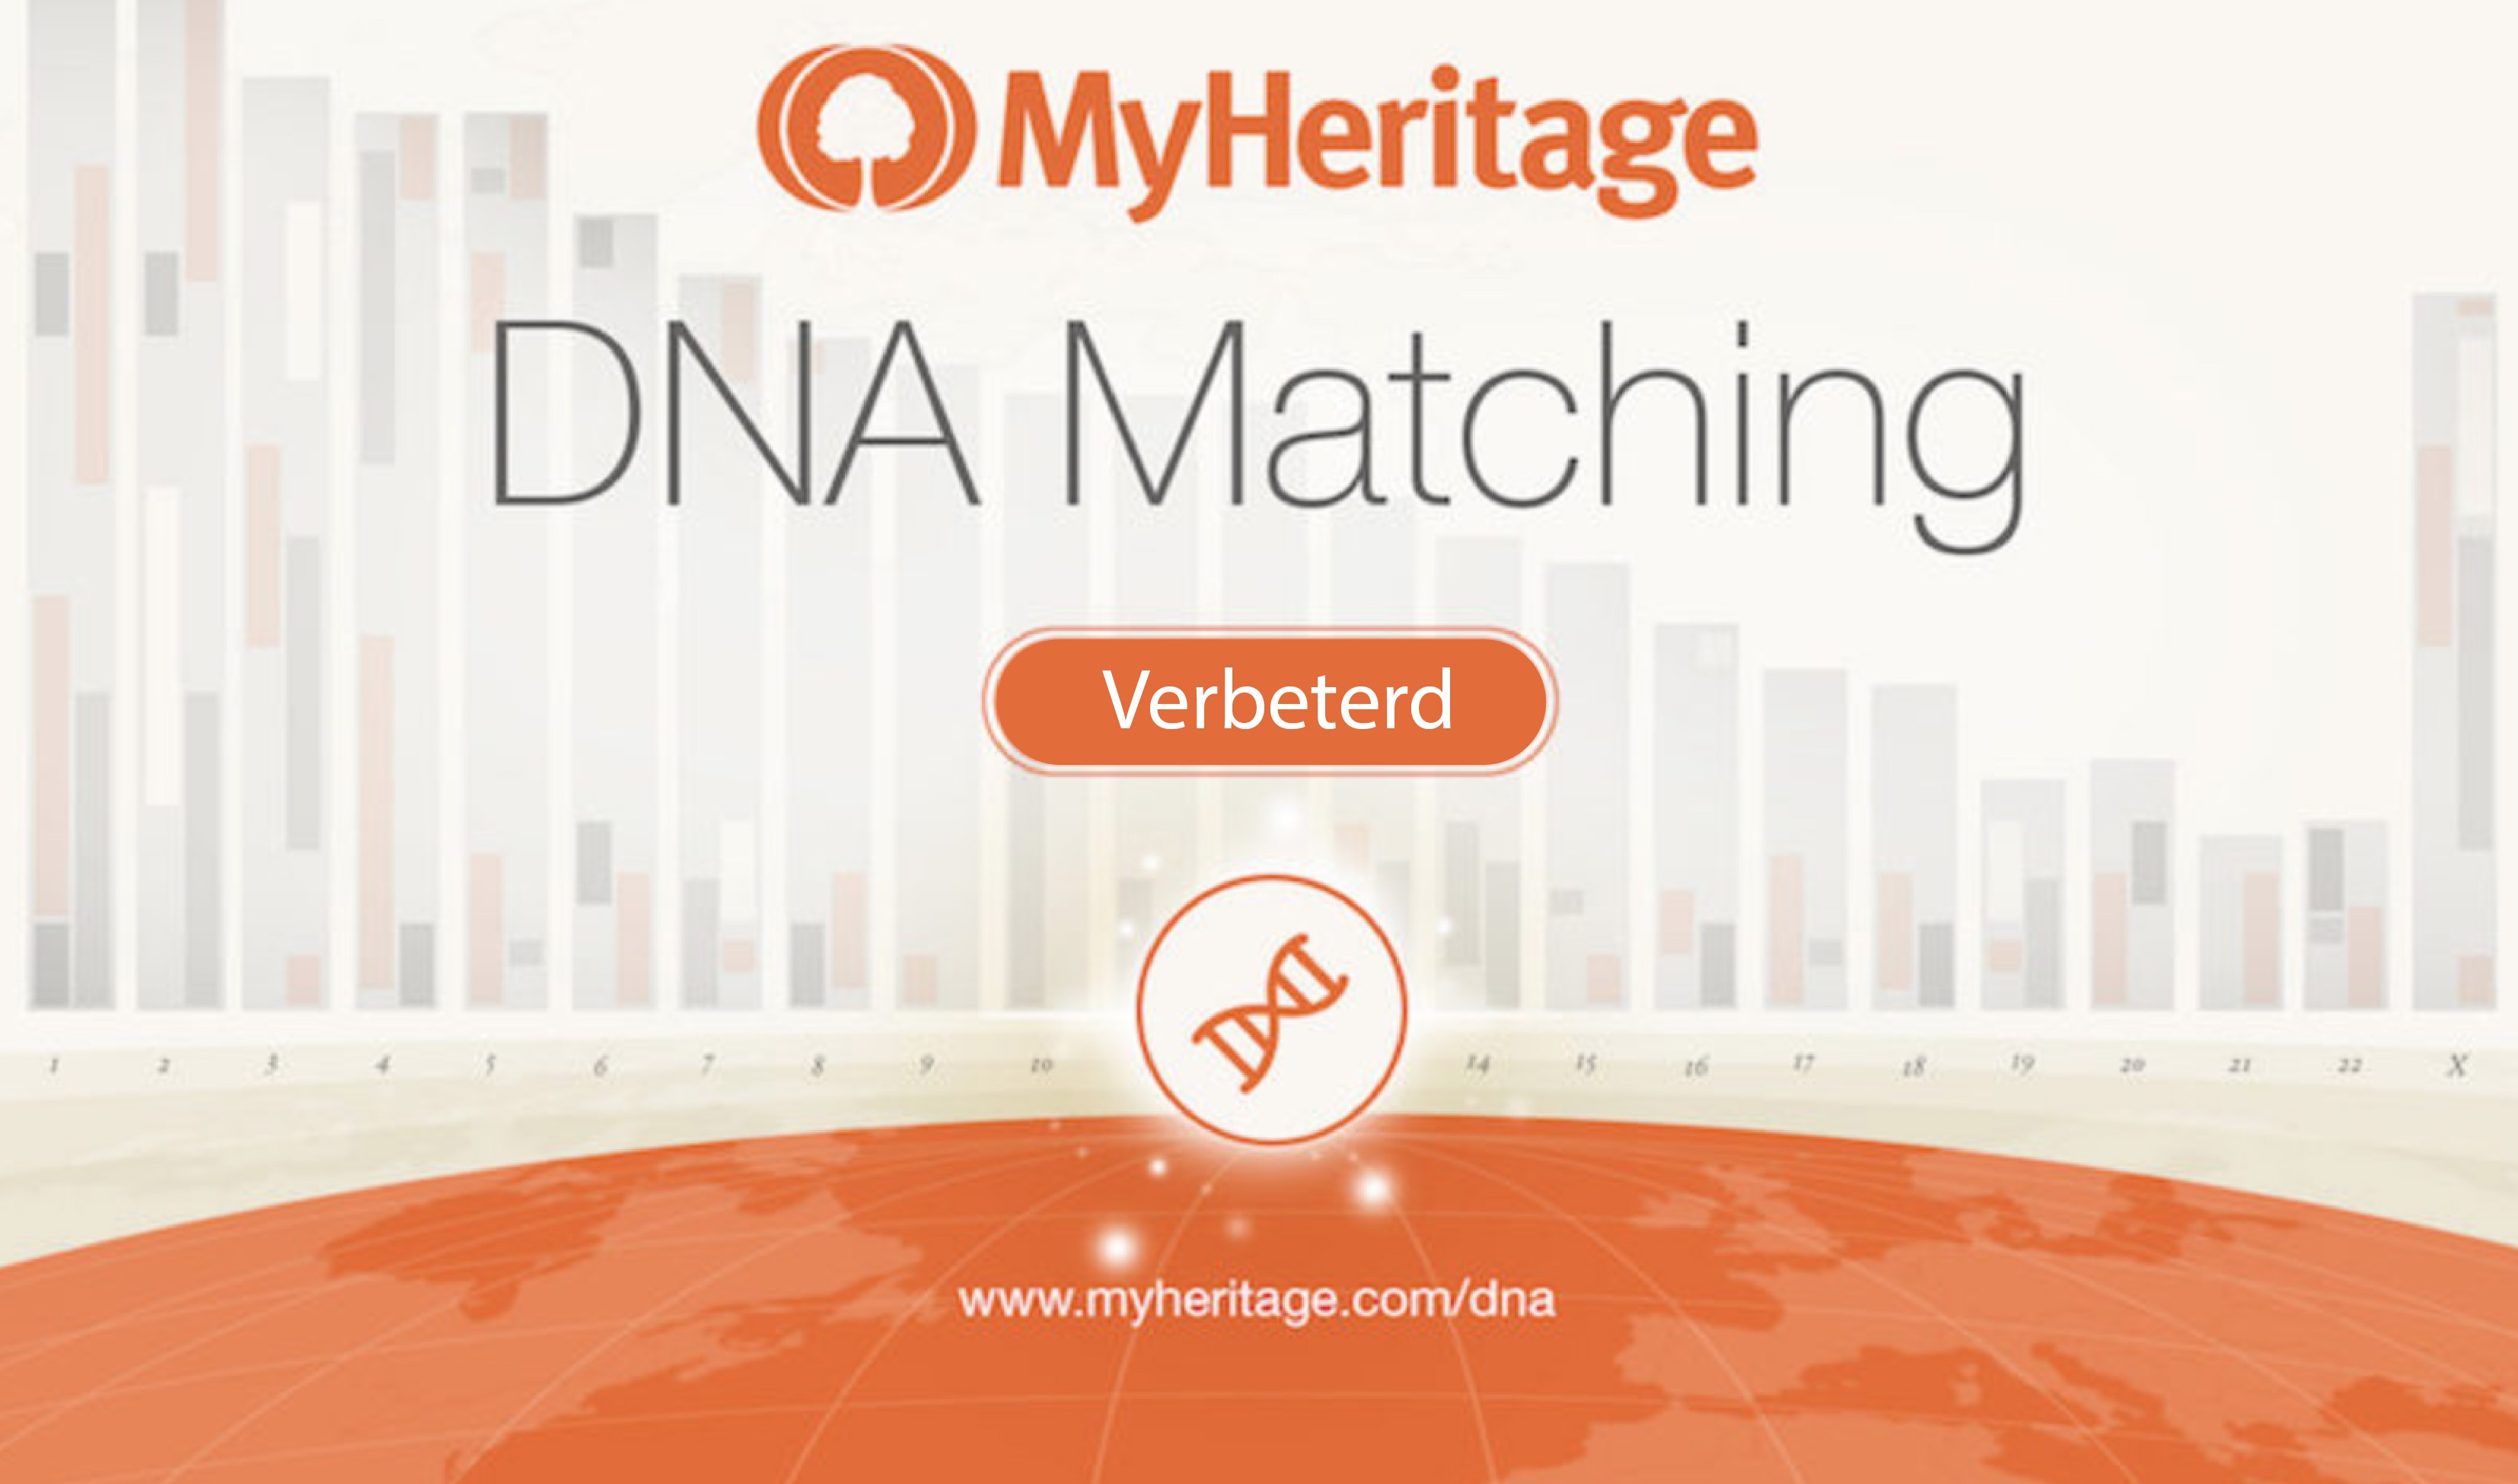 DNA Matching verbeterd met nieuwe functies